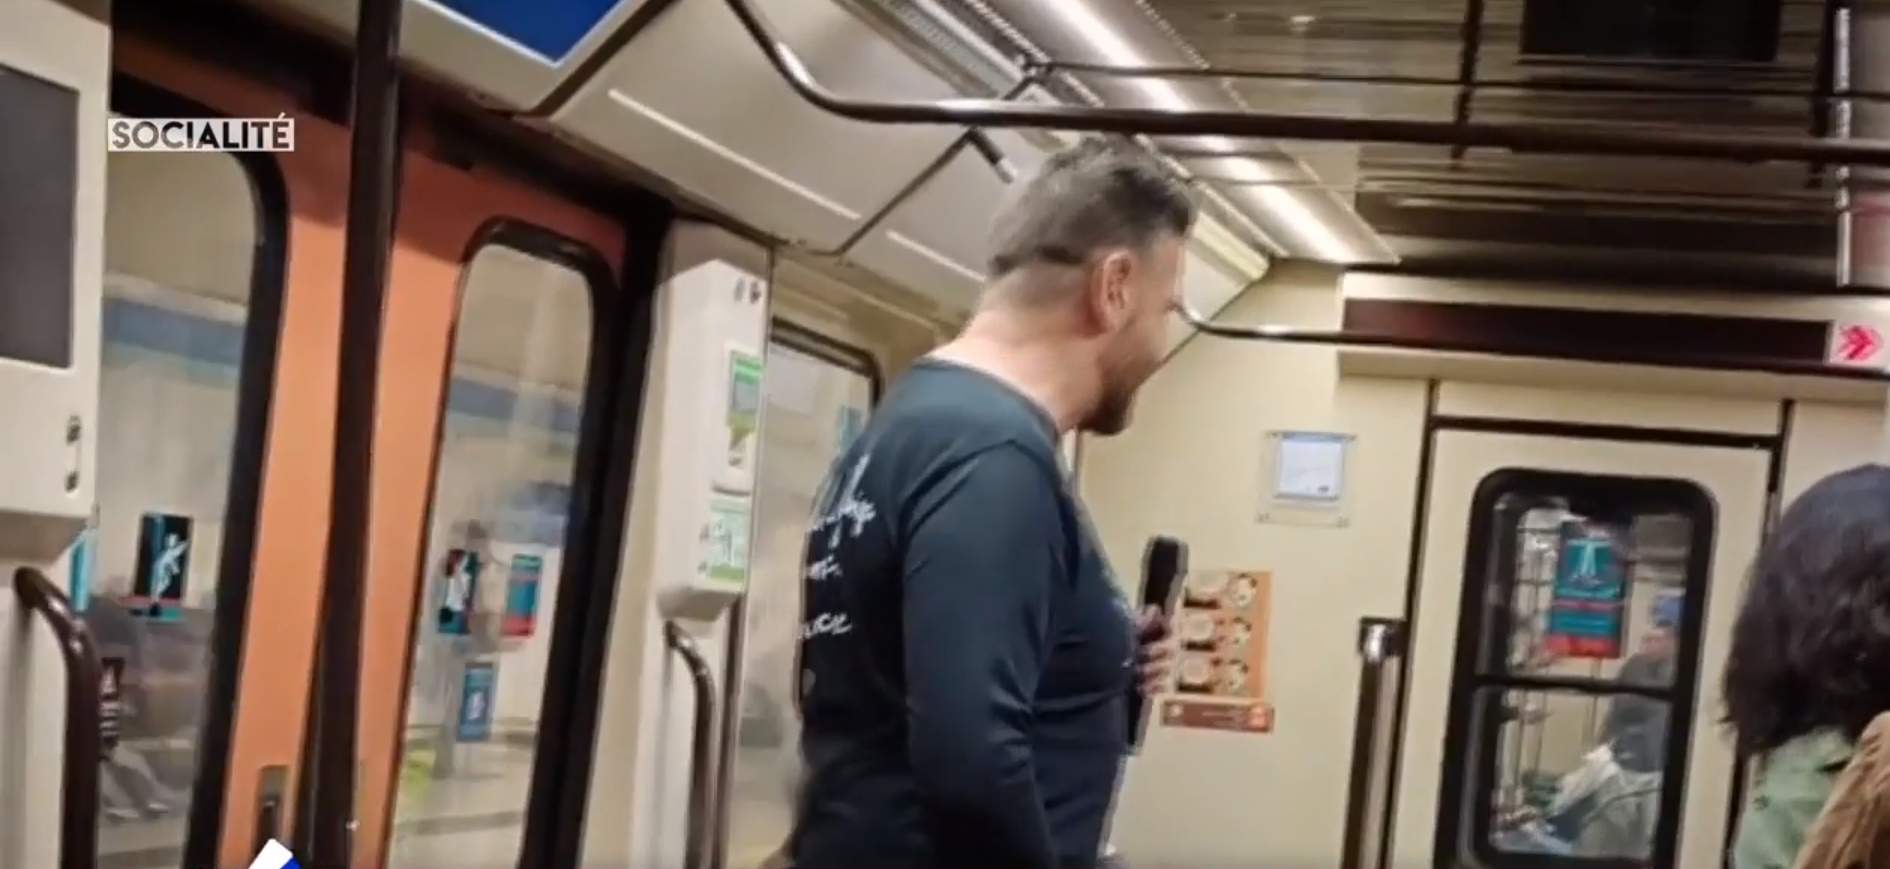 Cantant català VIP arruïnat actua al metro "per necessitat" demanant almoina